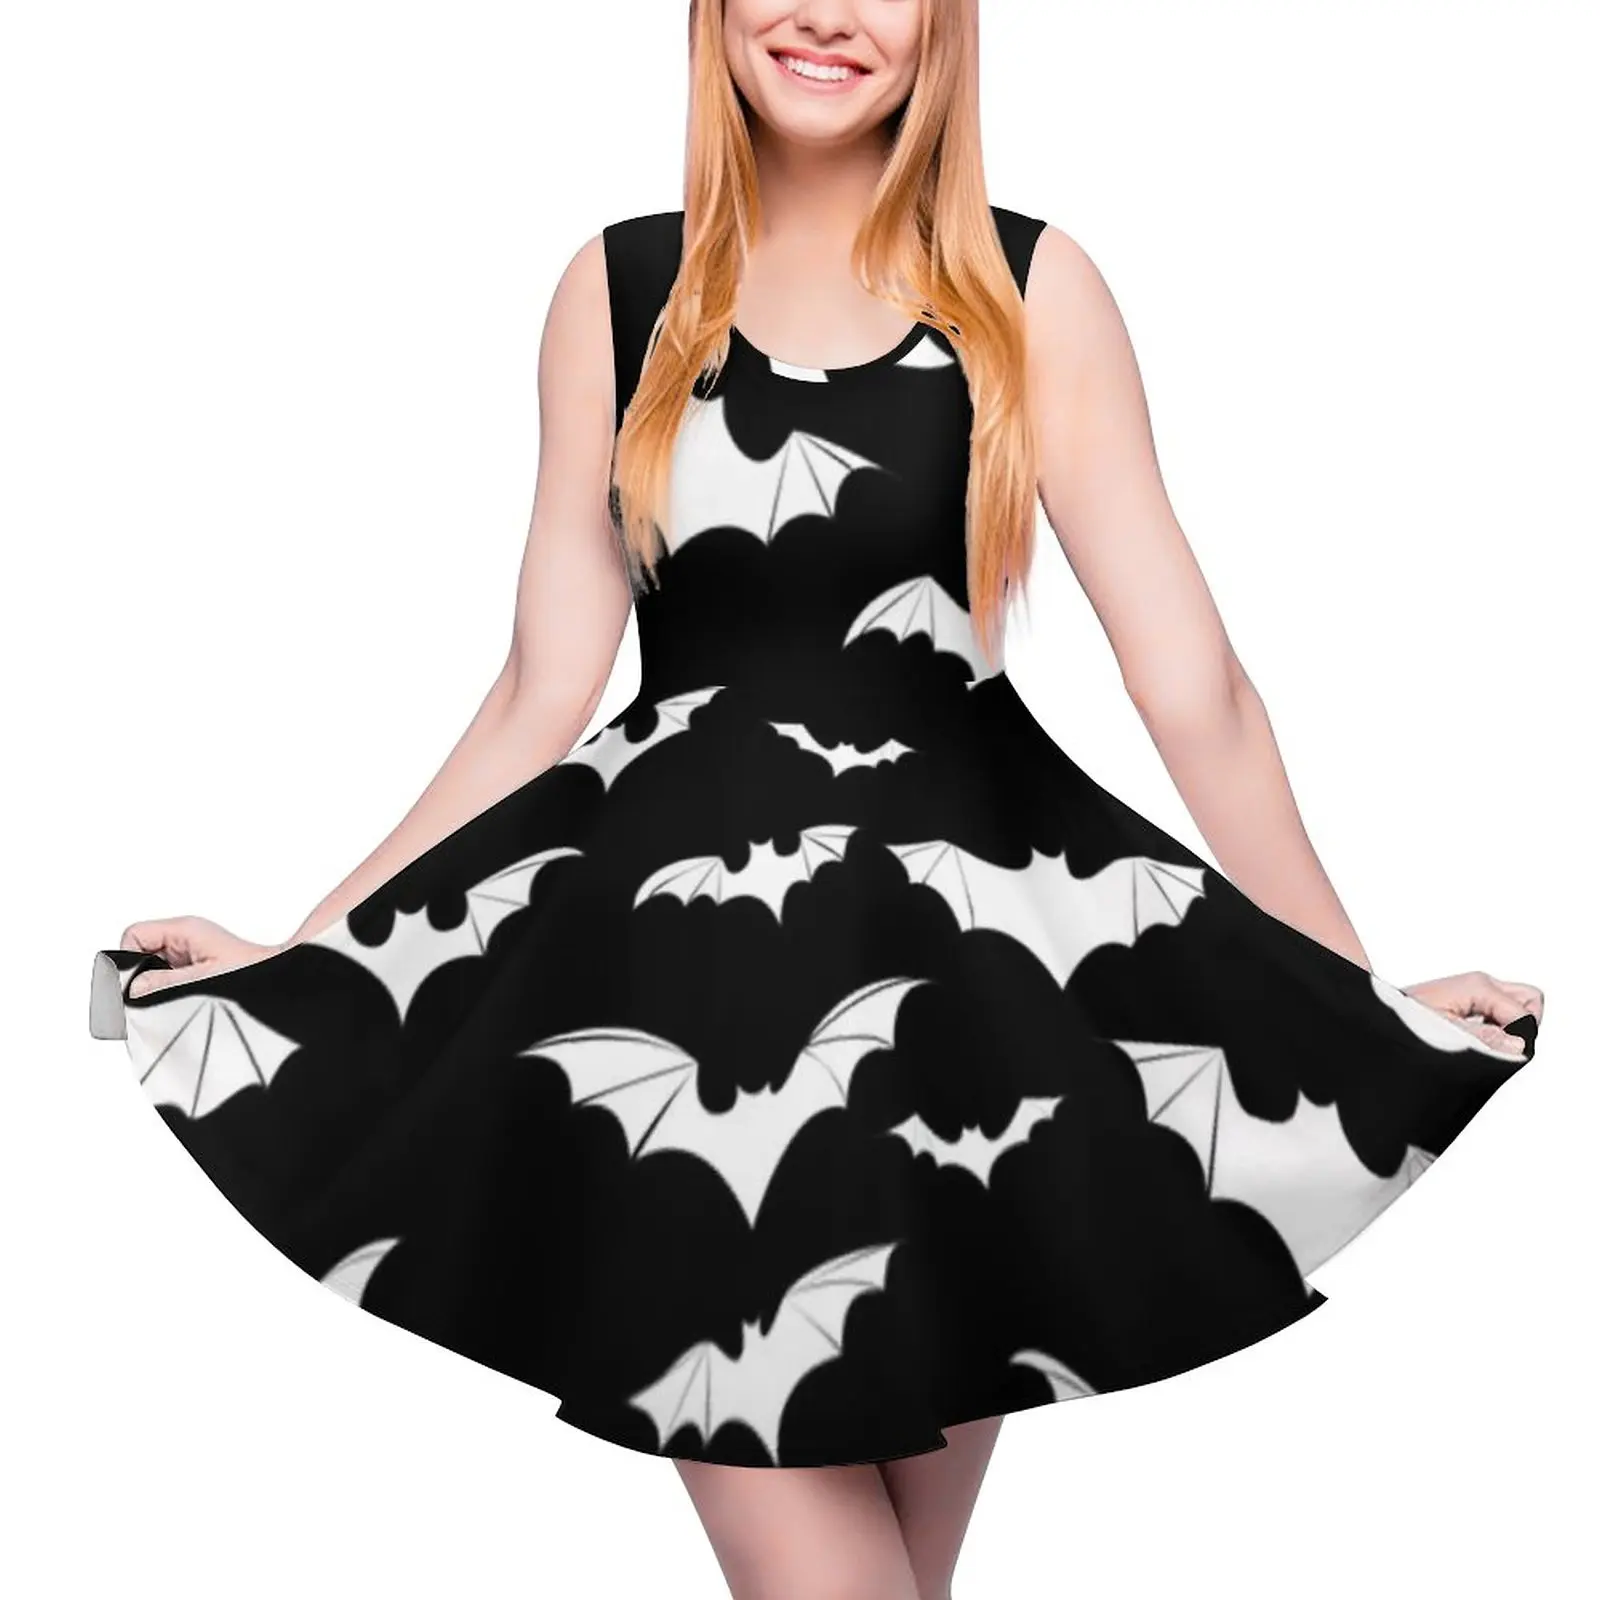 الخفافيش فستان الحيوان نمط الخريف فساتين الساخن الإناث جميلة فستان قطعة واحدة